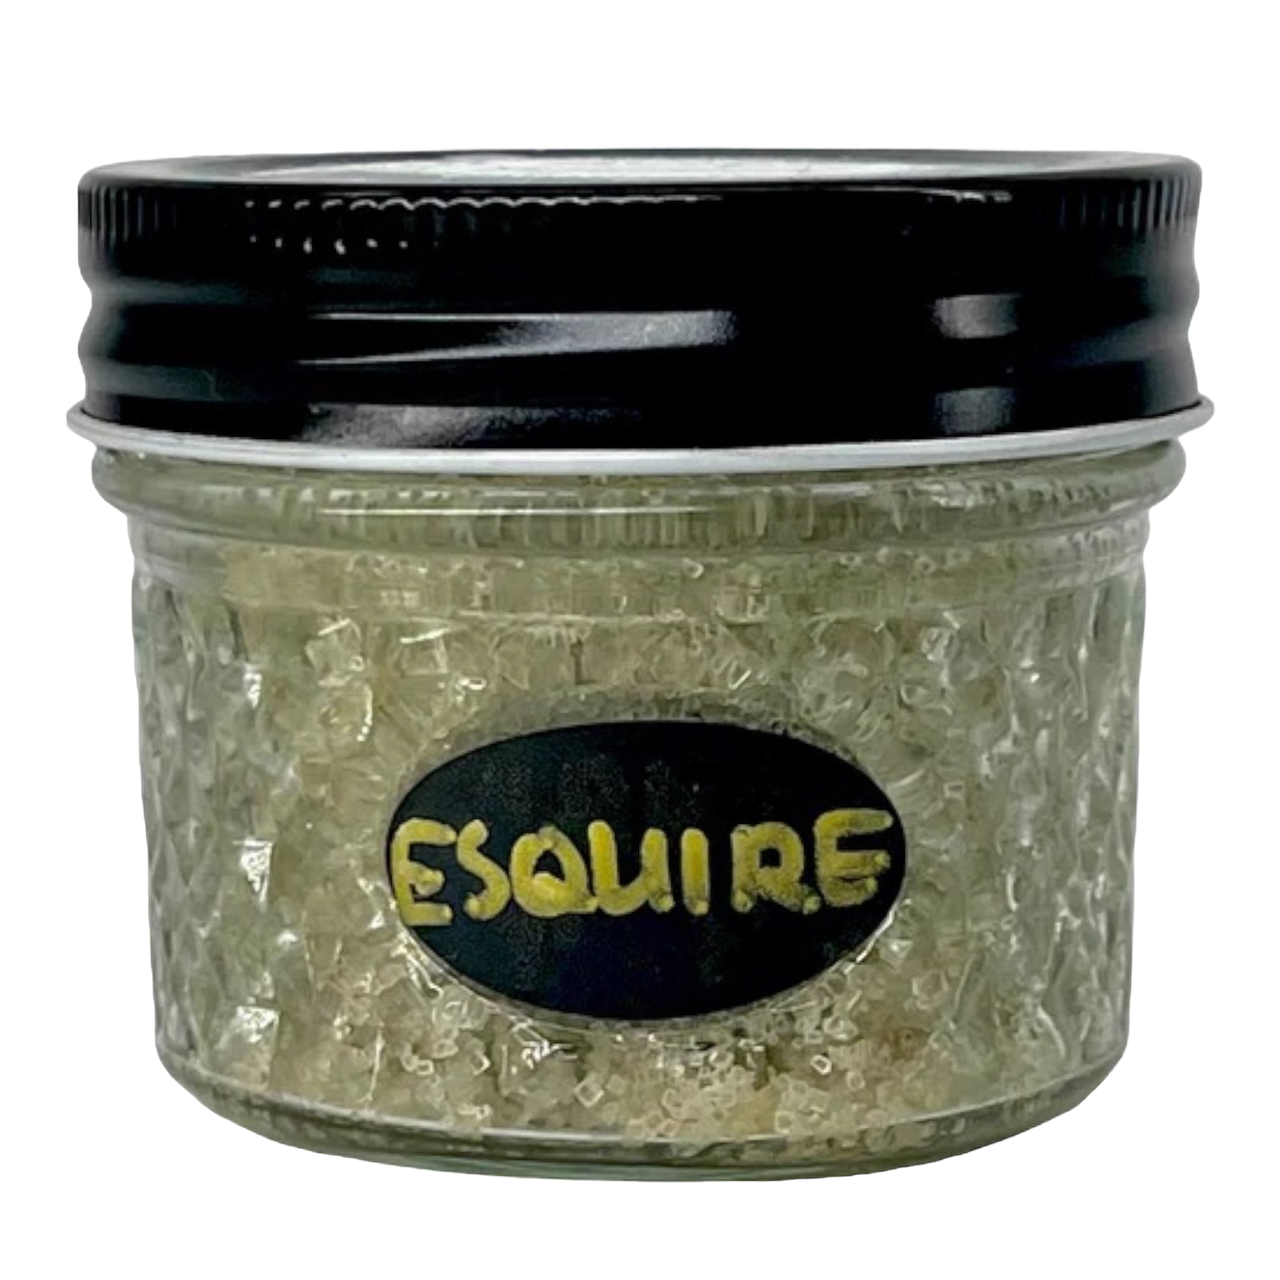 Organic Body Scrub - Esquire (Clary Sage & Cedarwood)